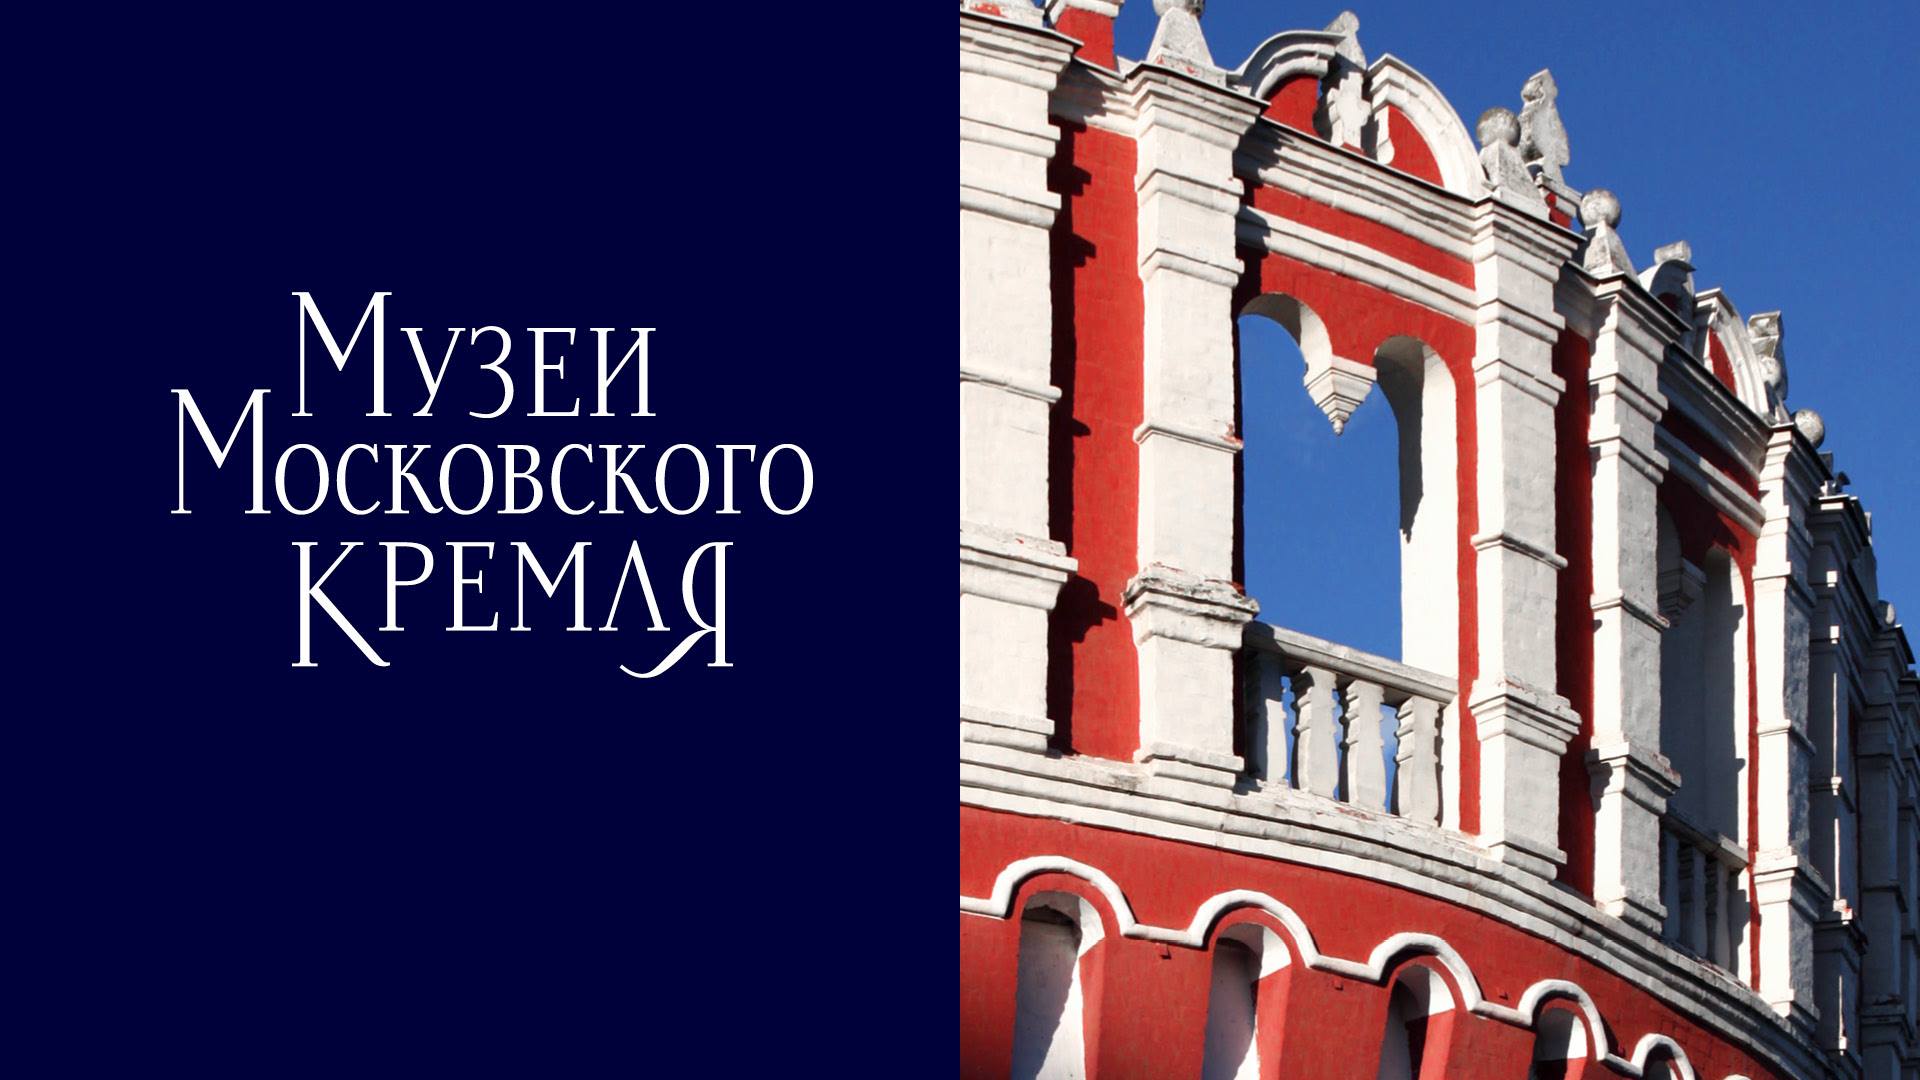  «ДизайнДепо» разработало новый логотип и фирменный стиль Музеев Московского Кремля 